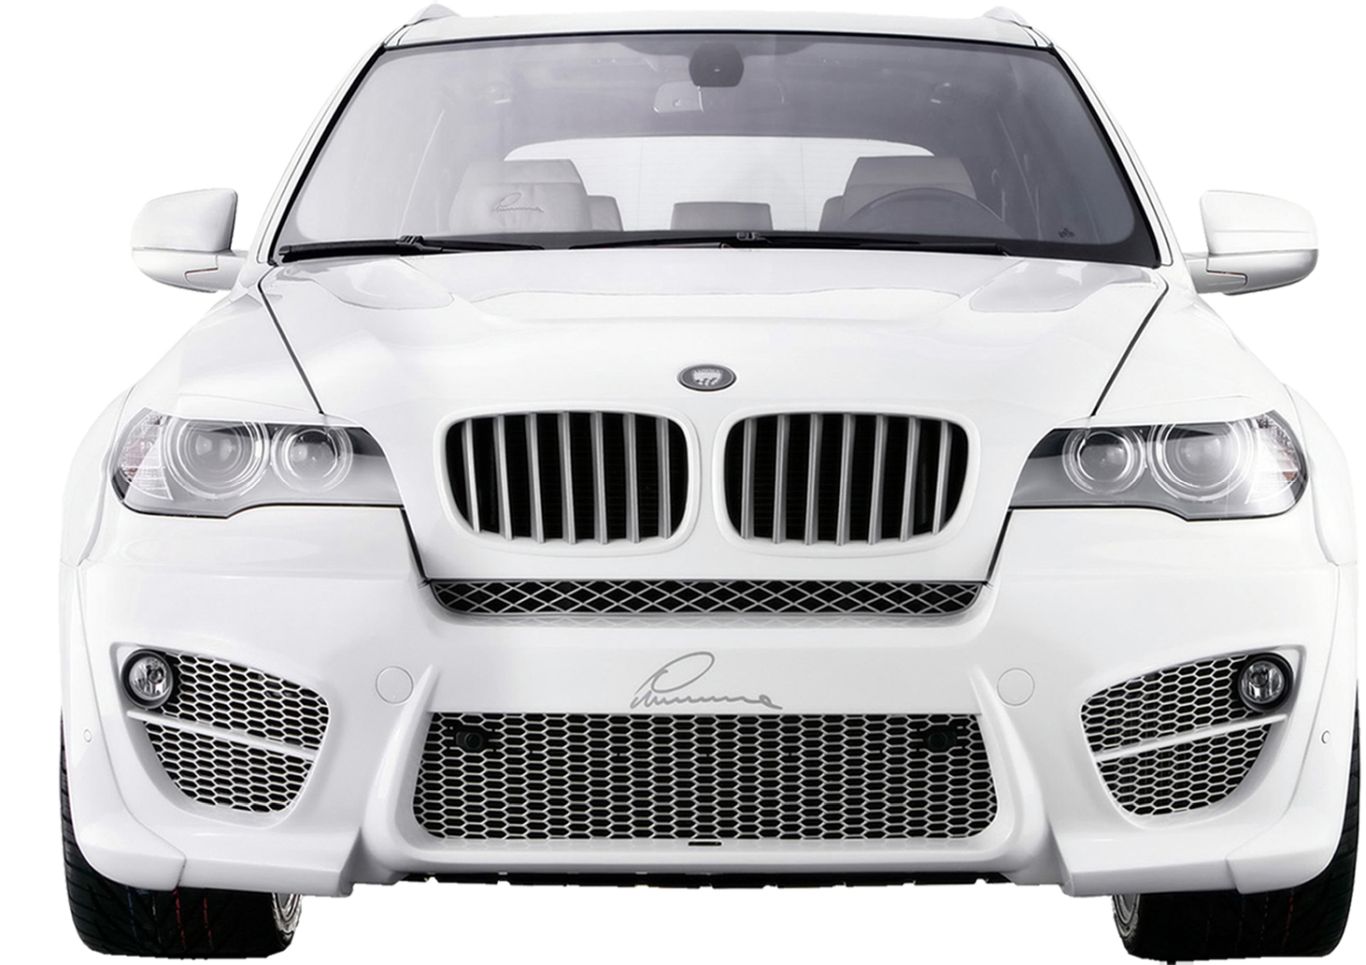 BMW PNG image, free download    图片编号:1677